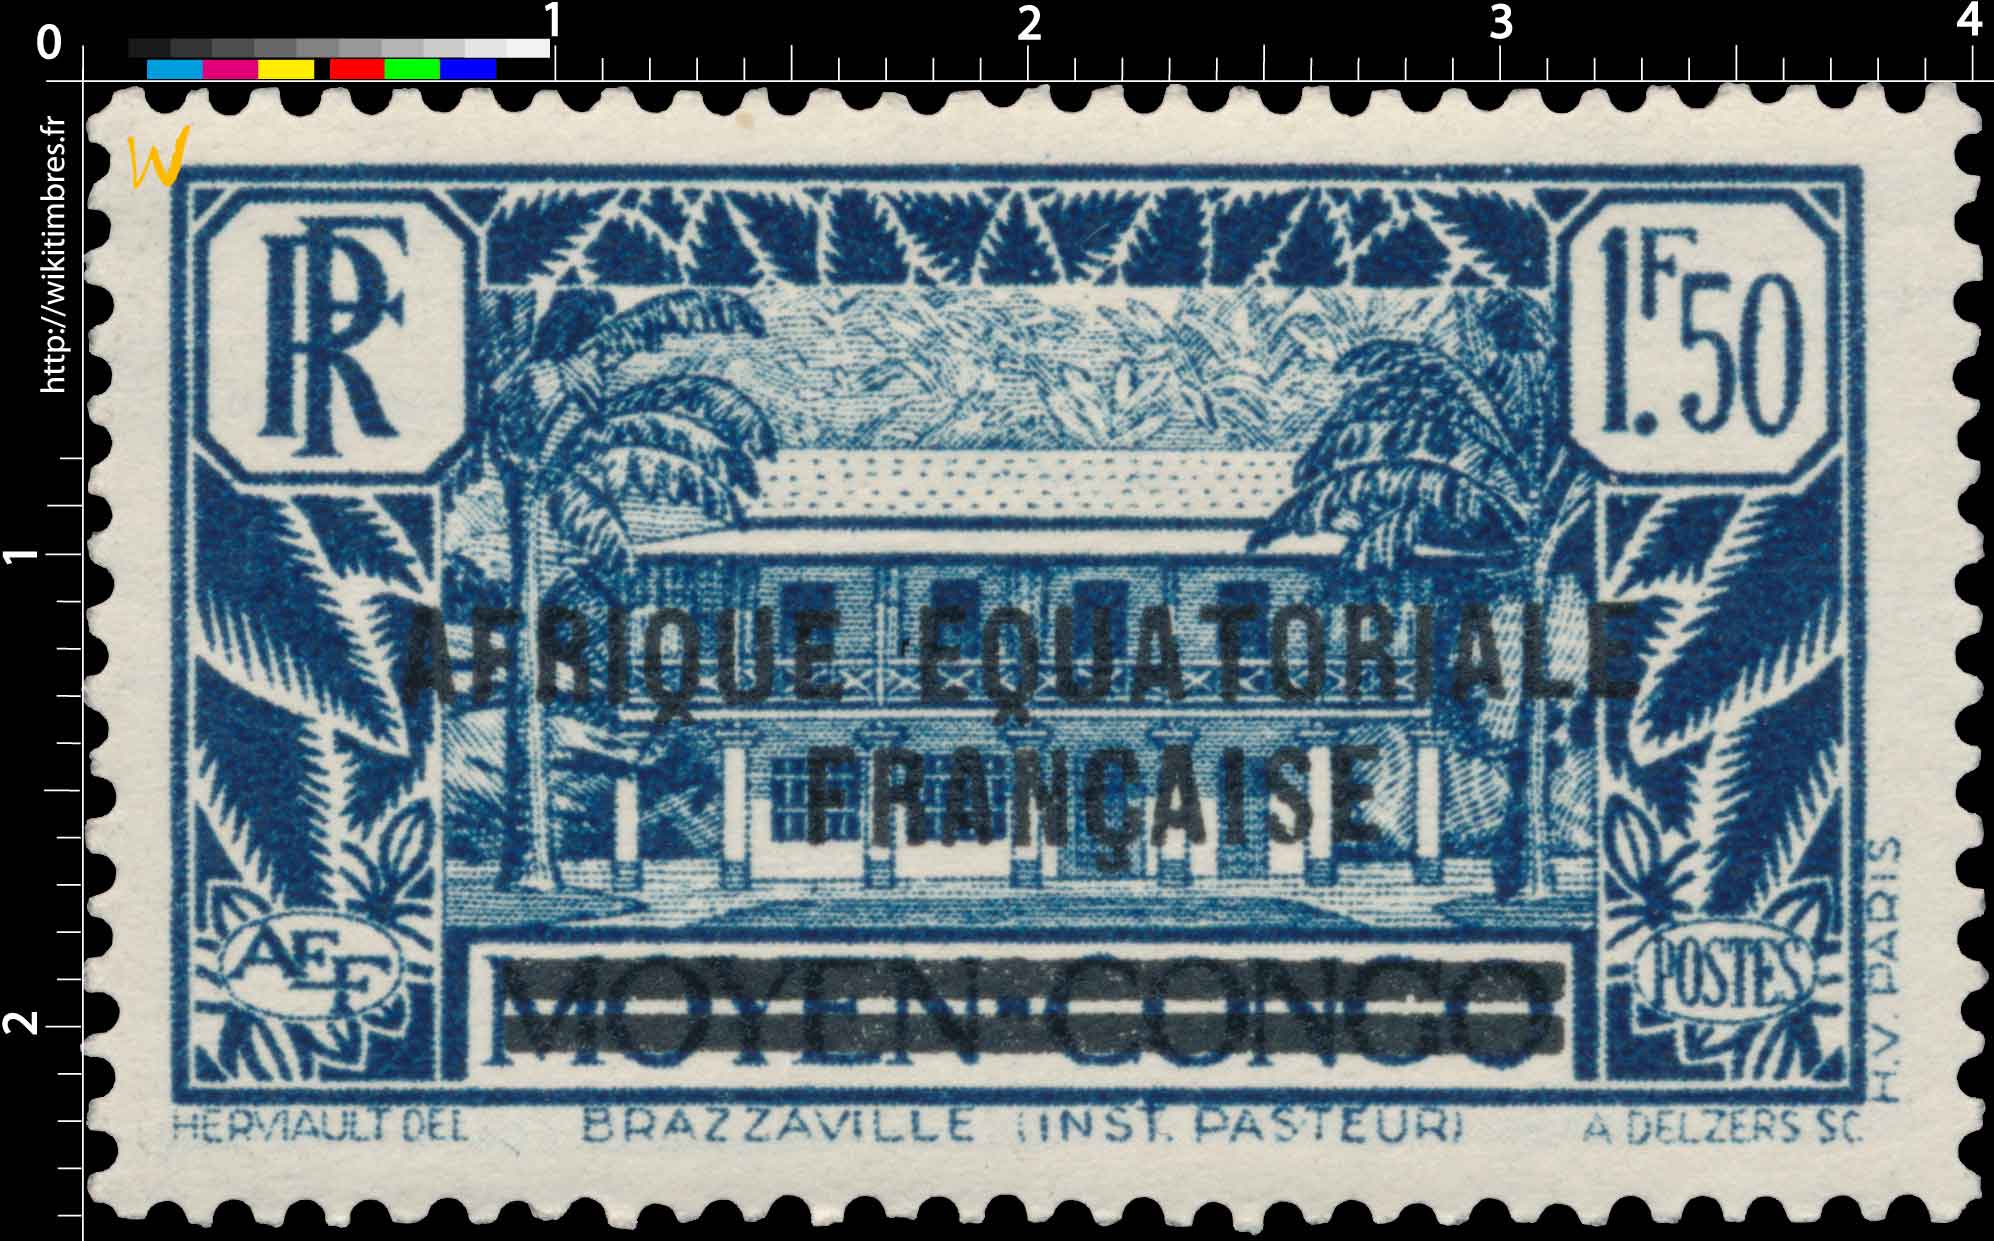 Brazzaville Inst. Pasteur moyen Congo Afrique Équatoriale Française